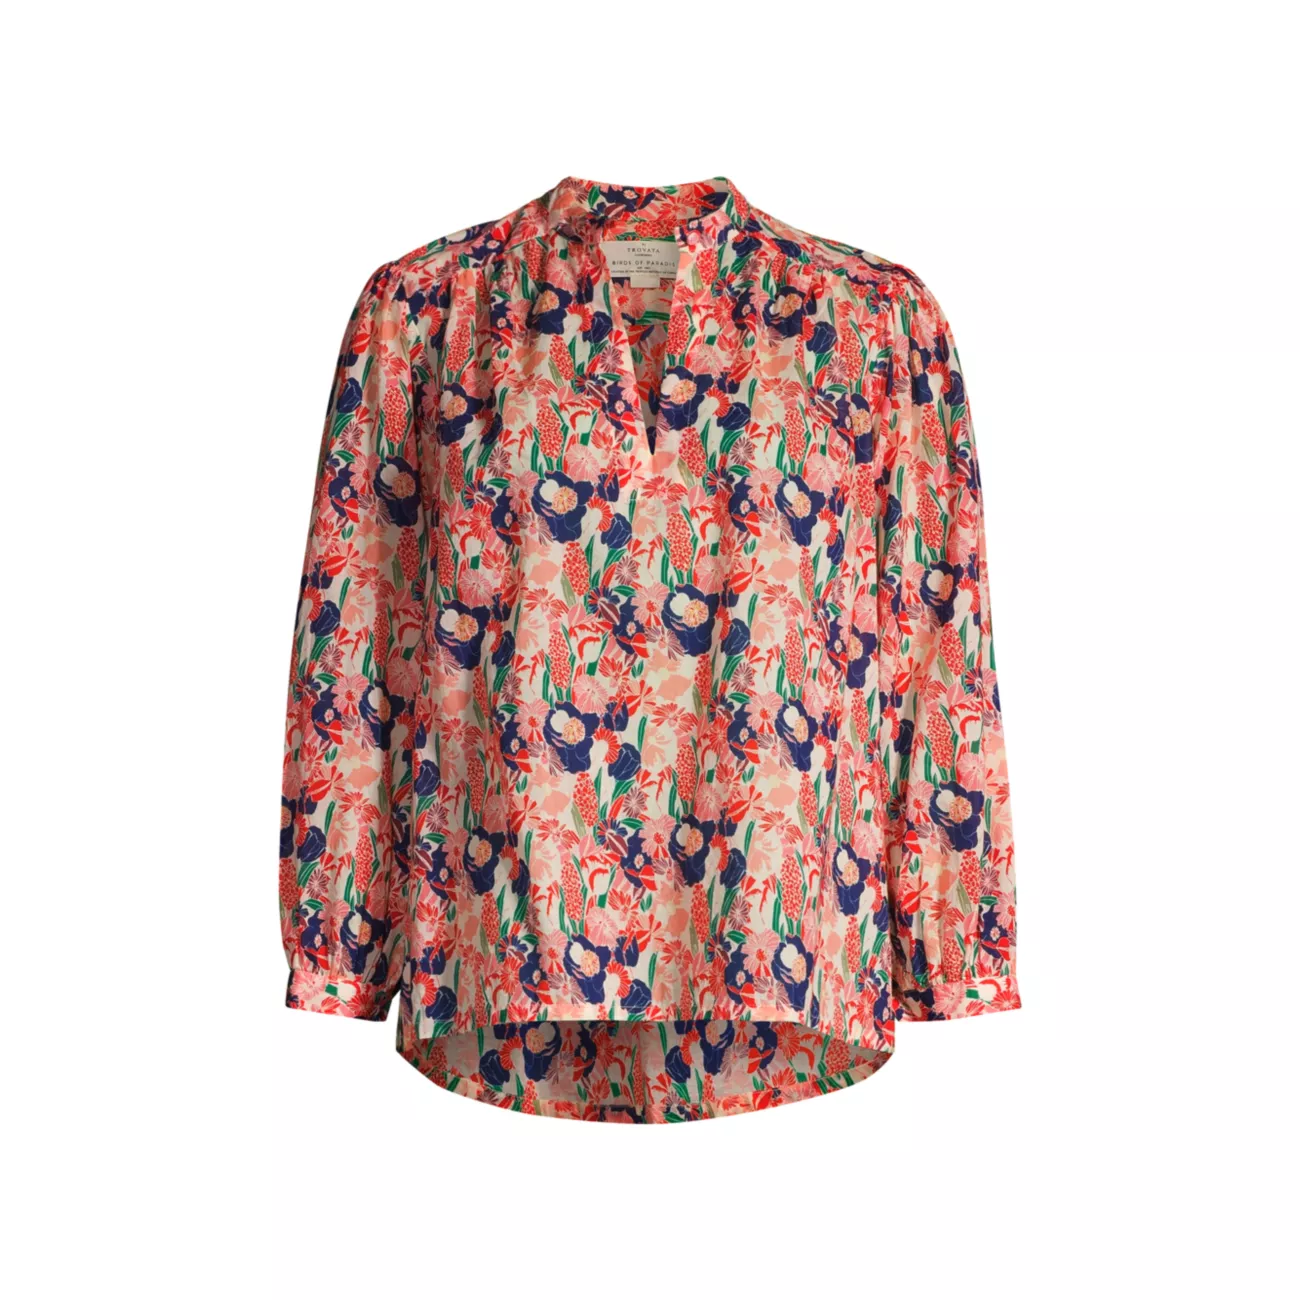 Хлопковая блузка Bailey с цветочным принтом Birds of Paradis